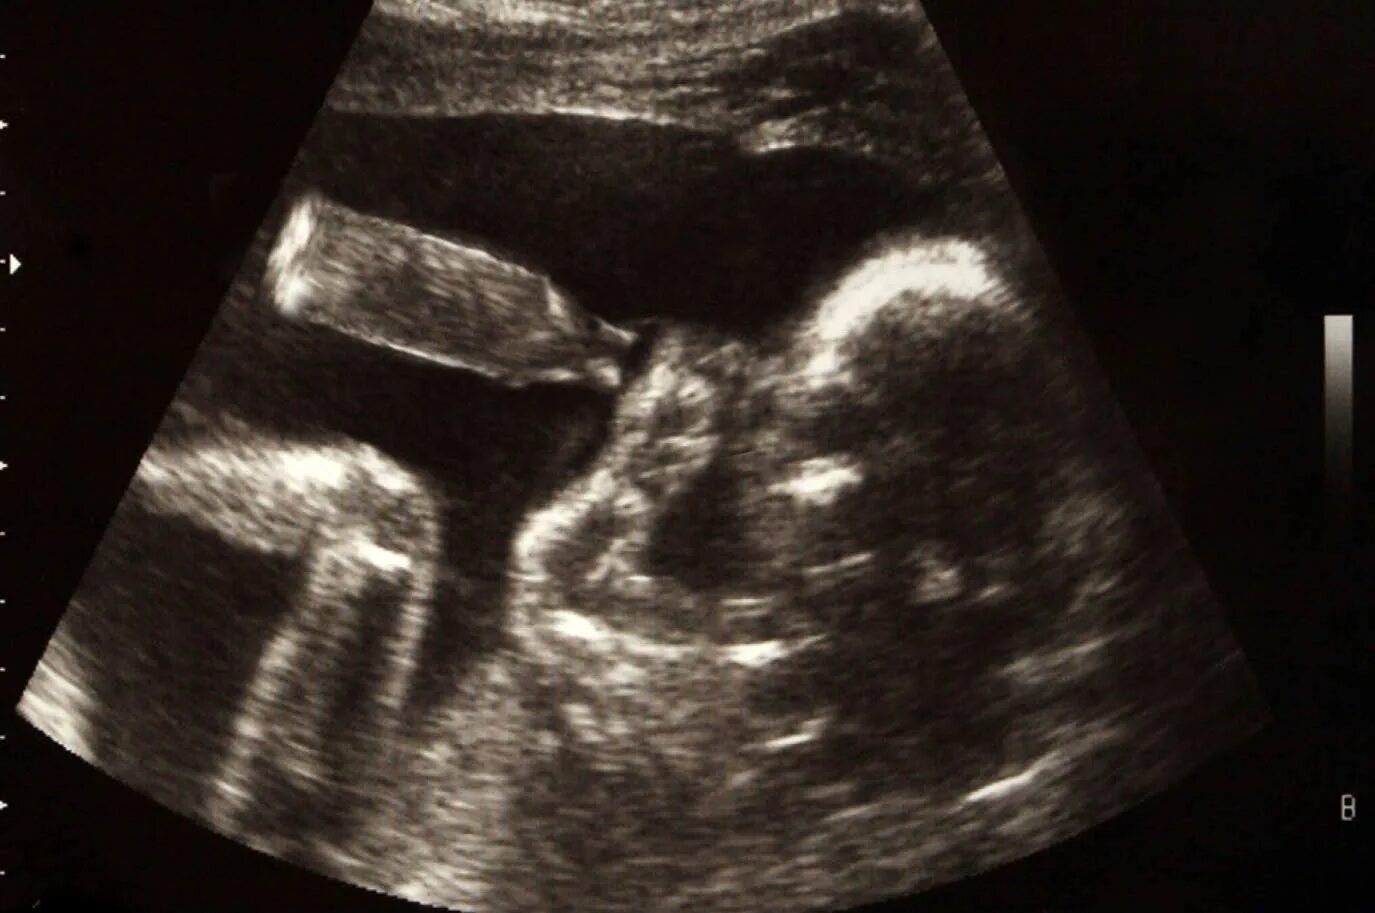 УЗИ двойни на 20 неделе беременности. УЗИ 19 недель беременности двойня. УЗИ ребенка на 20 неделе беременности фото двойня. УЗИ 15 недель беременности двойня. 19 недель беременности размер плода